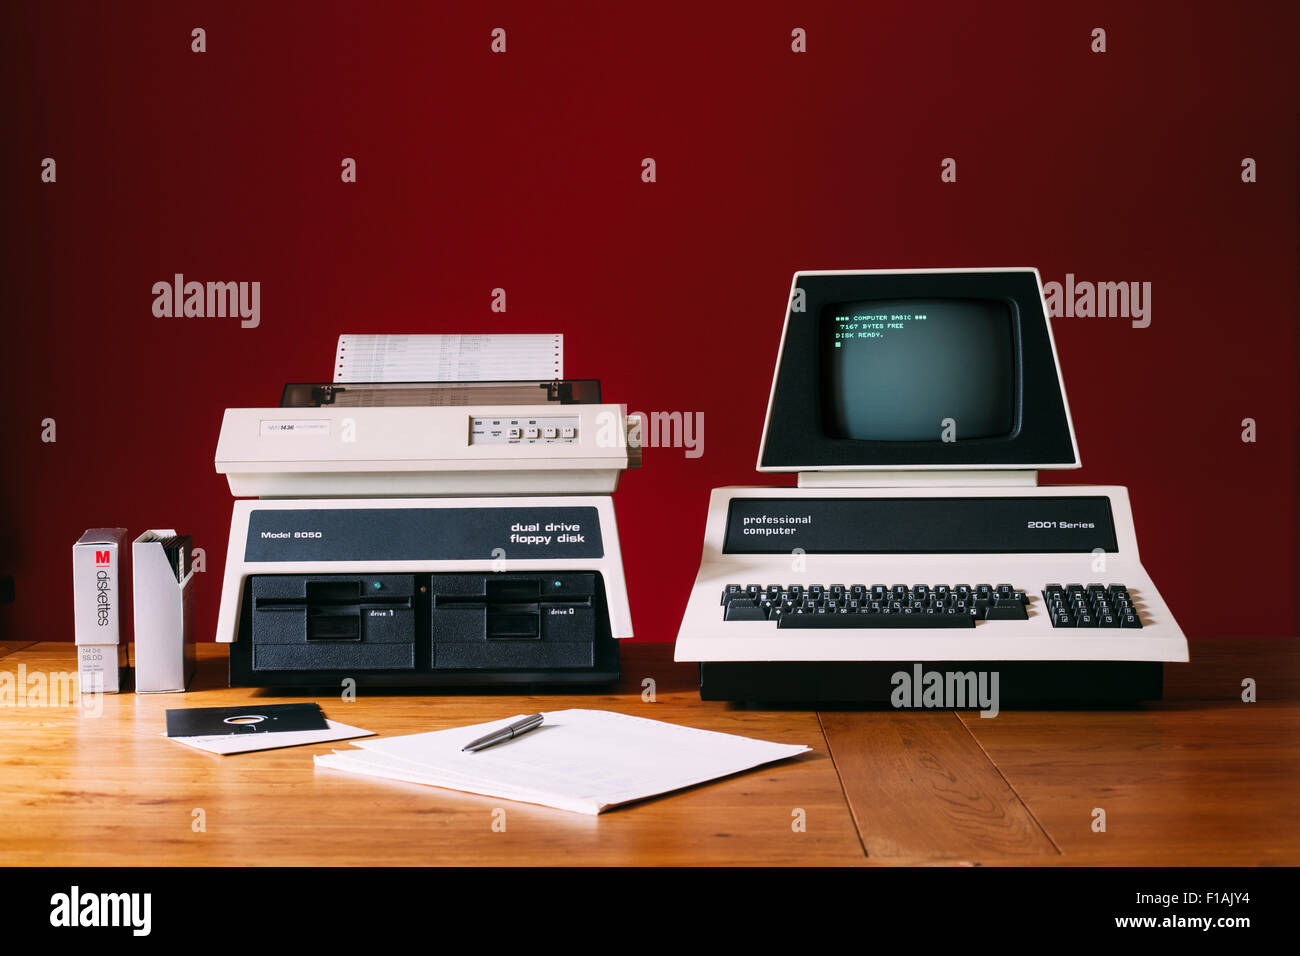 Vintage anni settanta Personal Computer con unità disco floppy e stampante a matrice di punti. Commodore PET Personal computer con il branding rimosso. Foto Stock